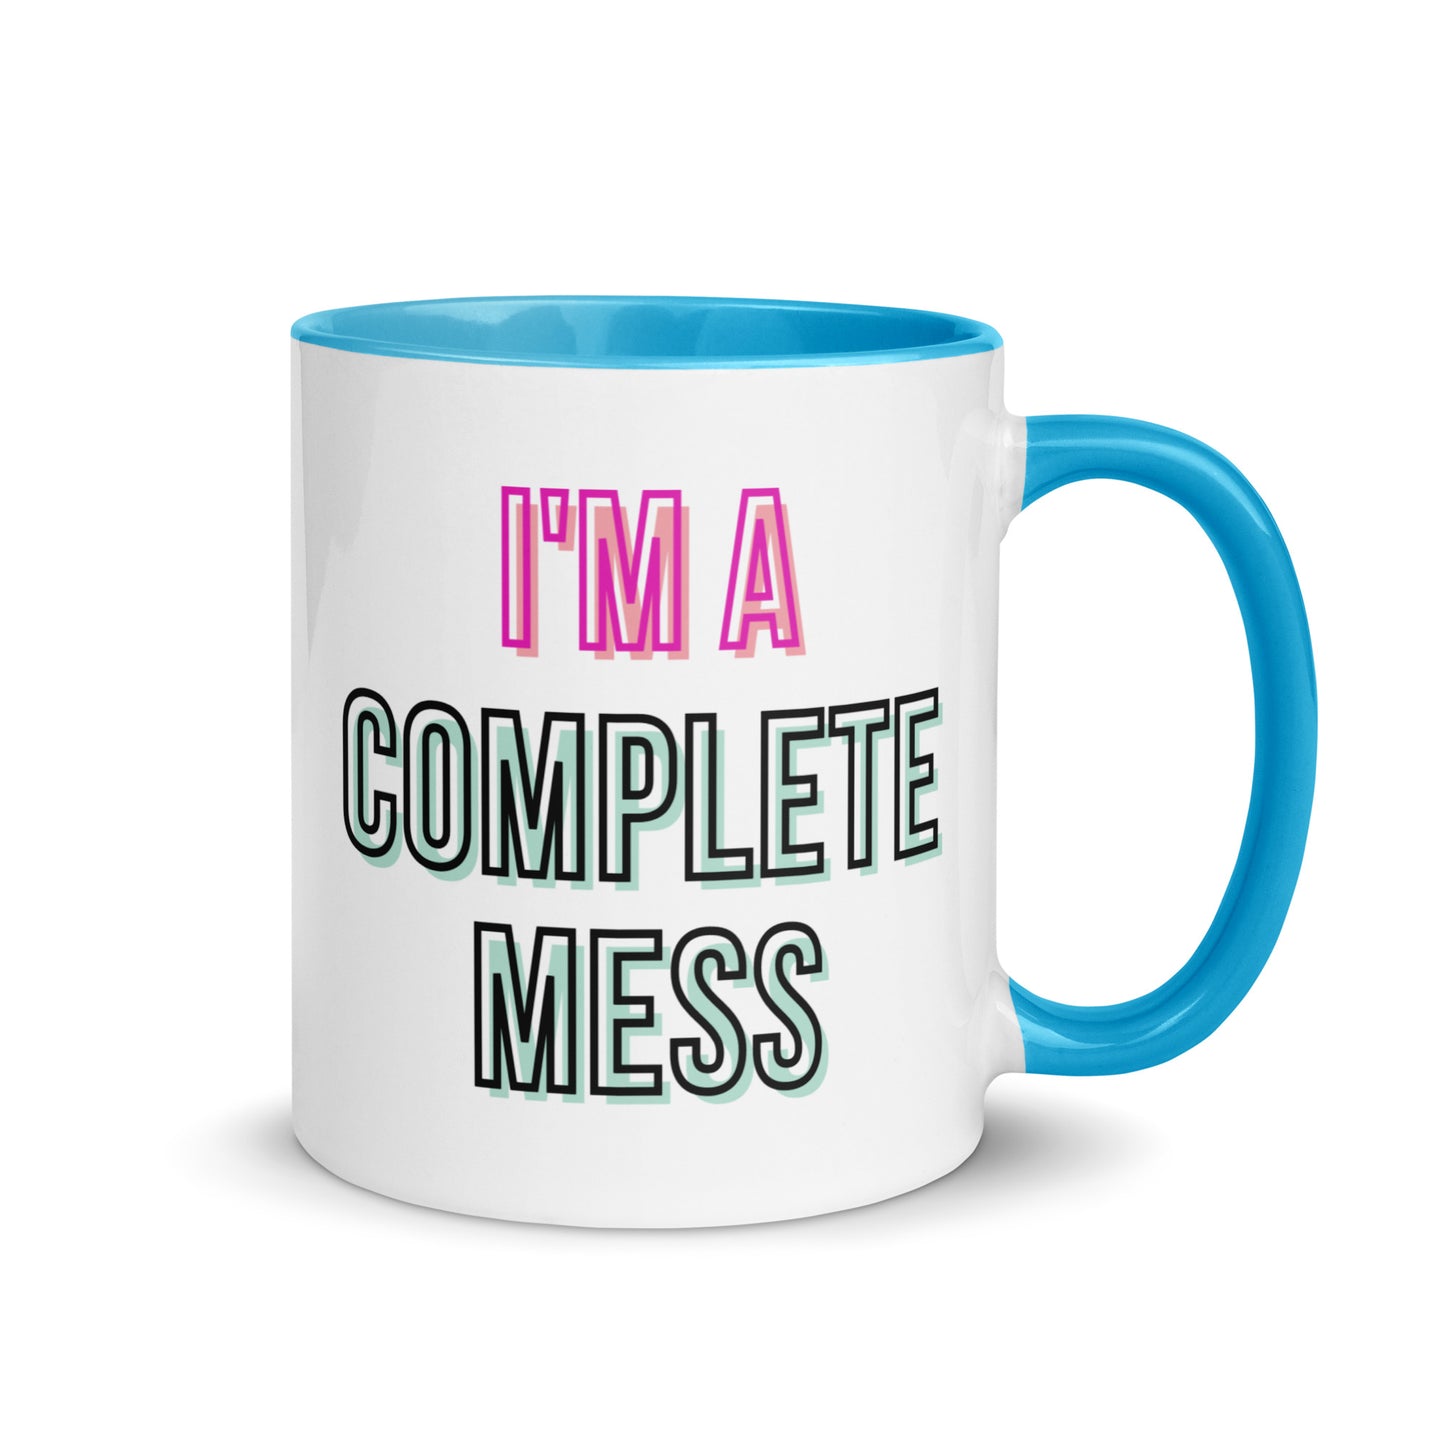 I'm a Complete Mess Mug